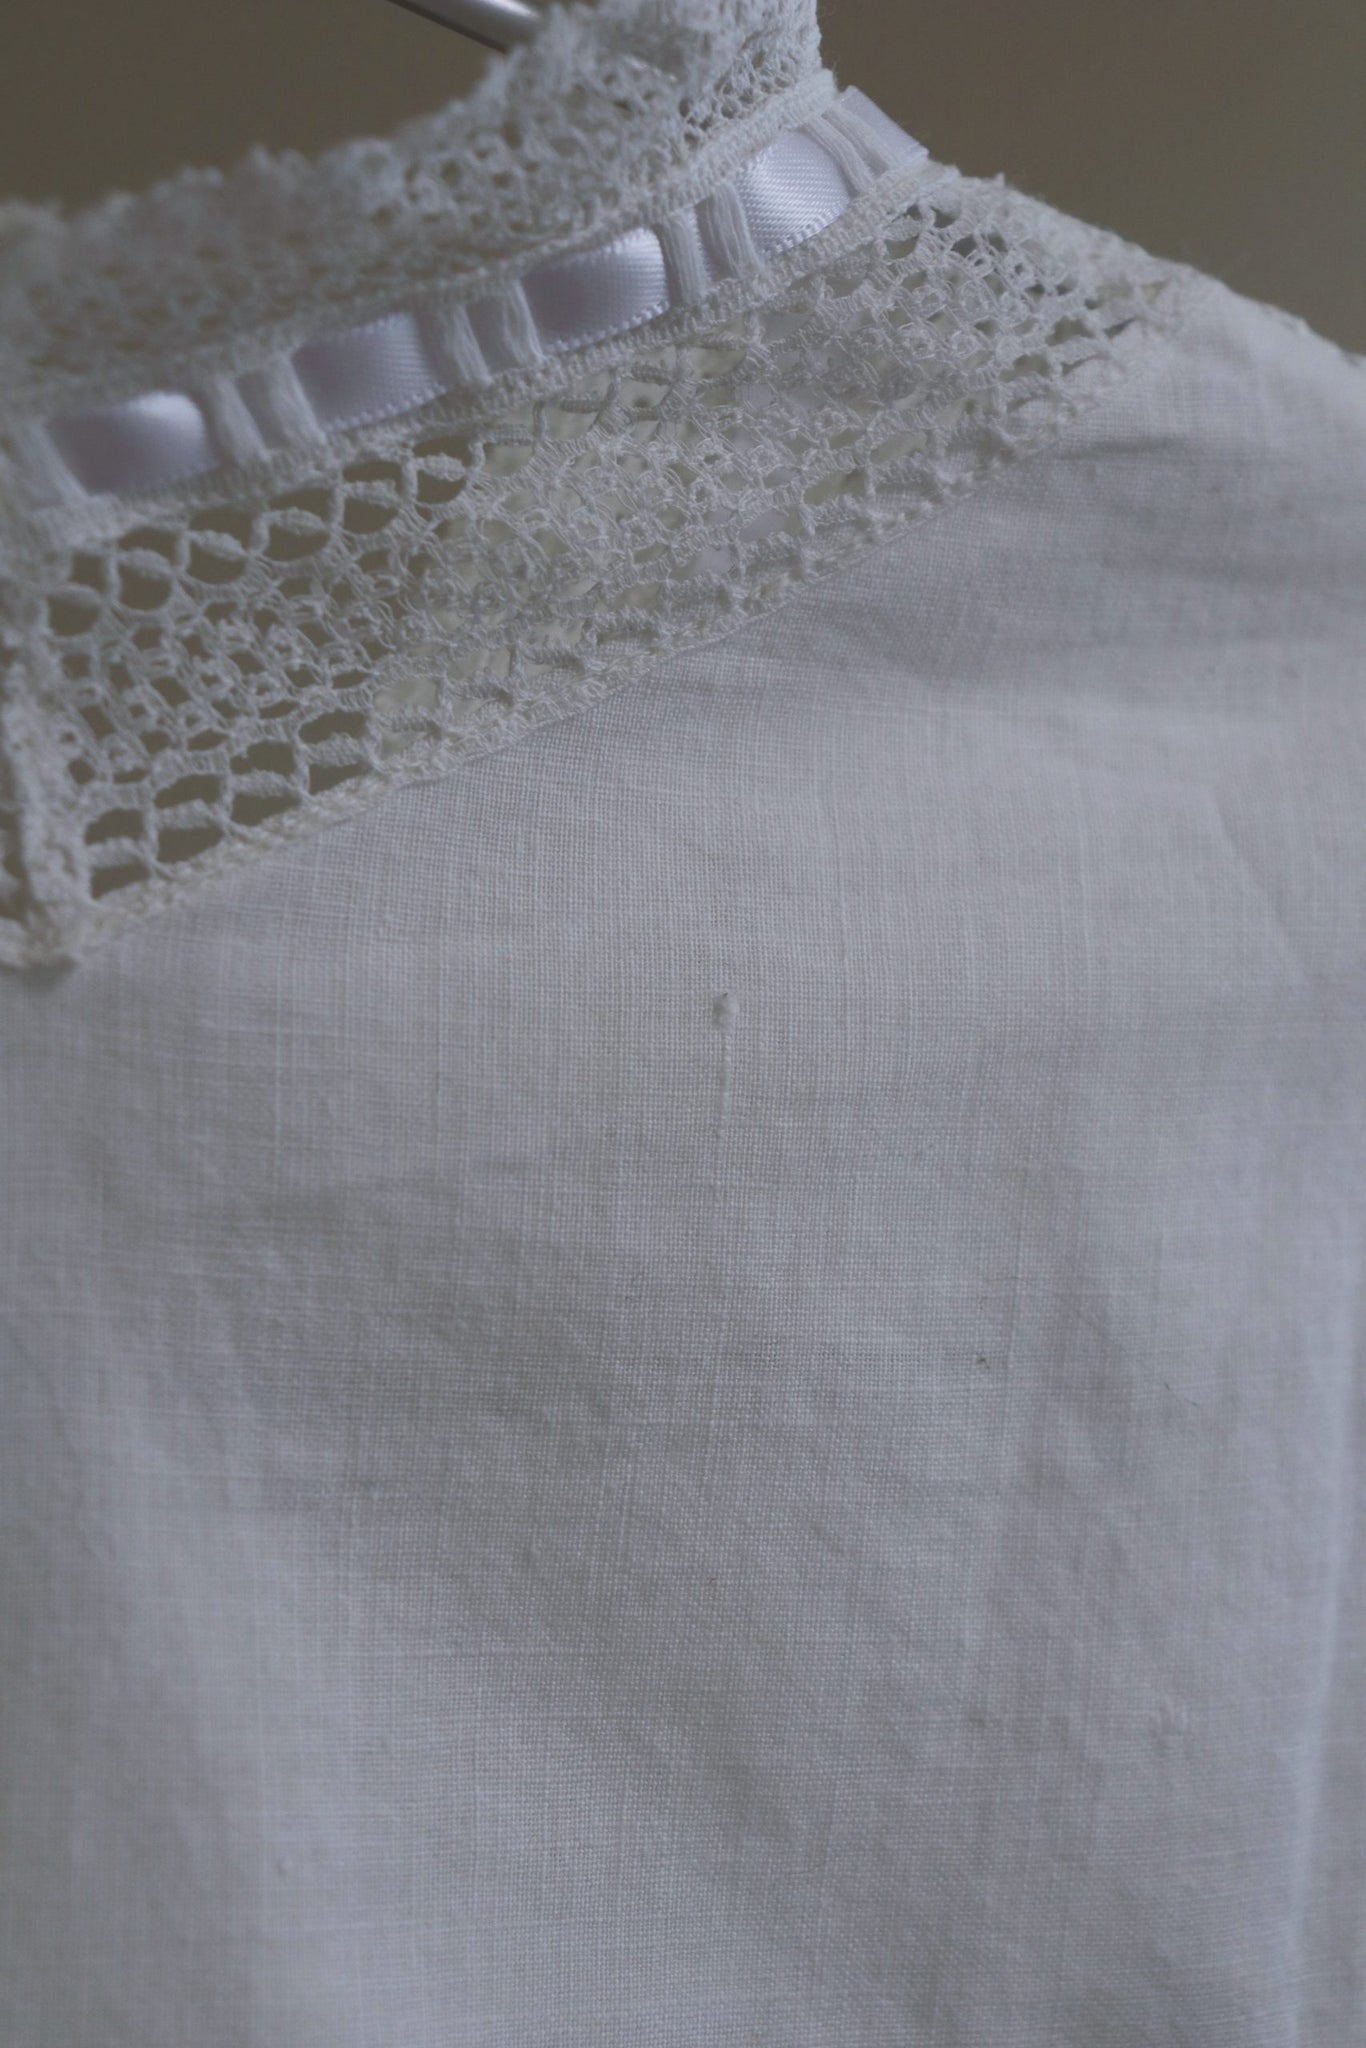 1900s Lace Linen Blouse White